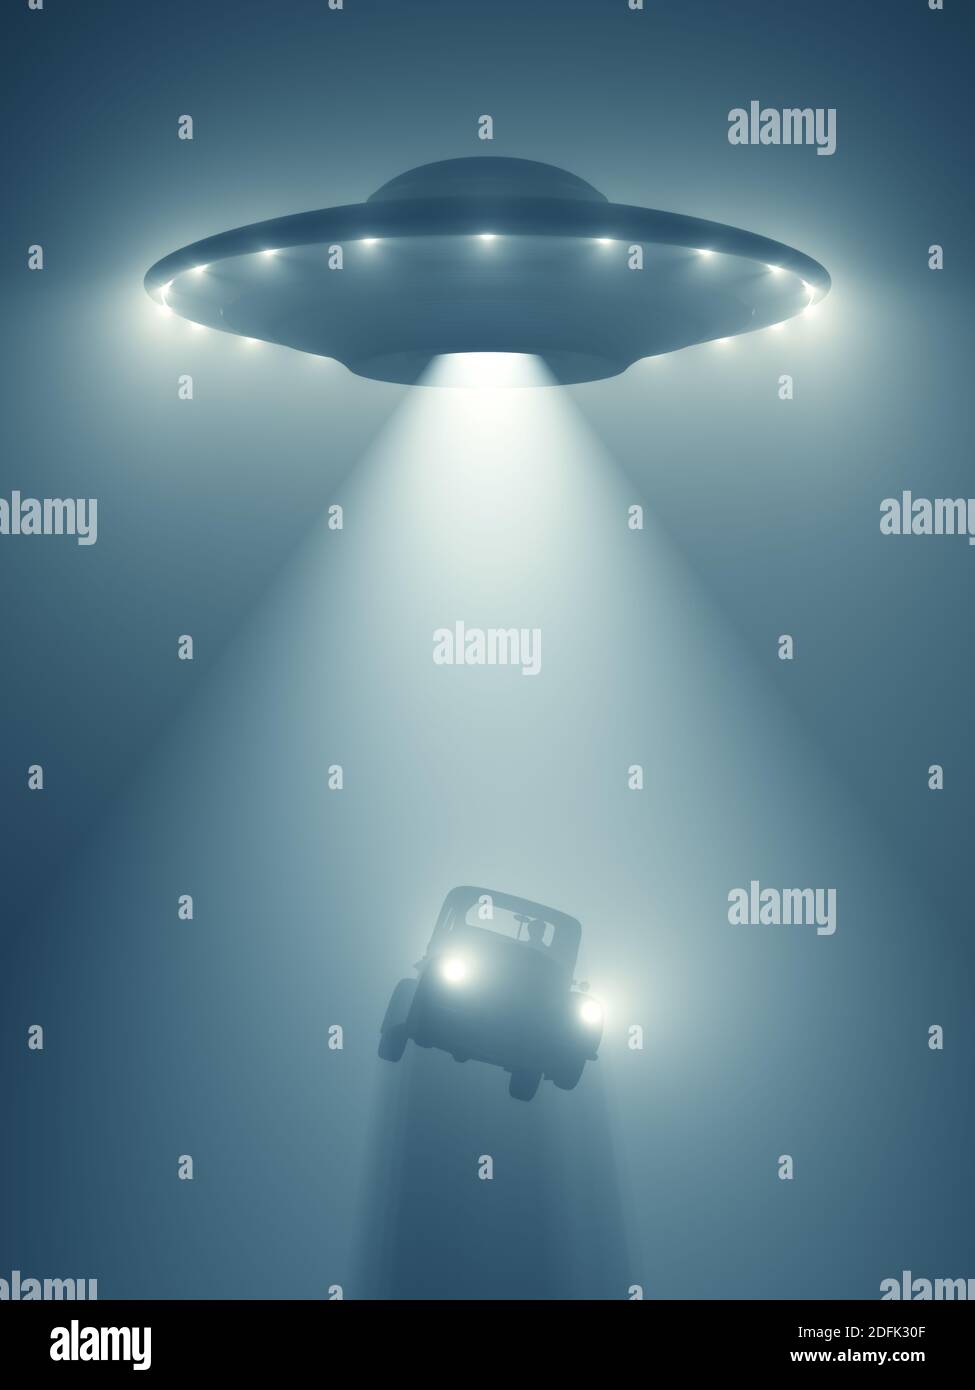 Alien abduction, illustration Stock Photo